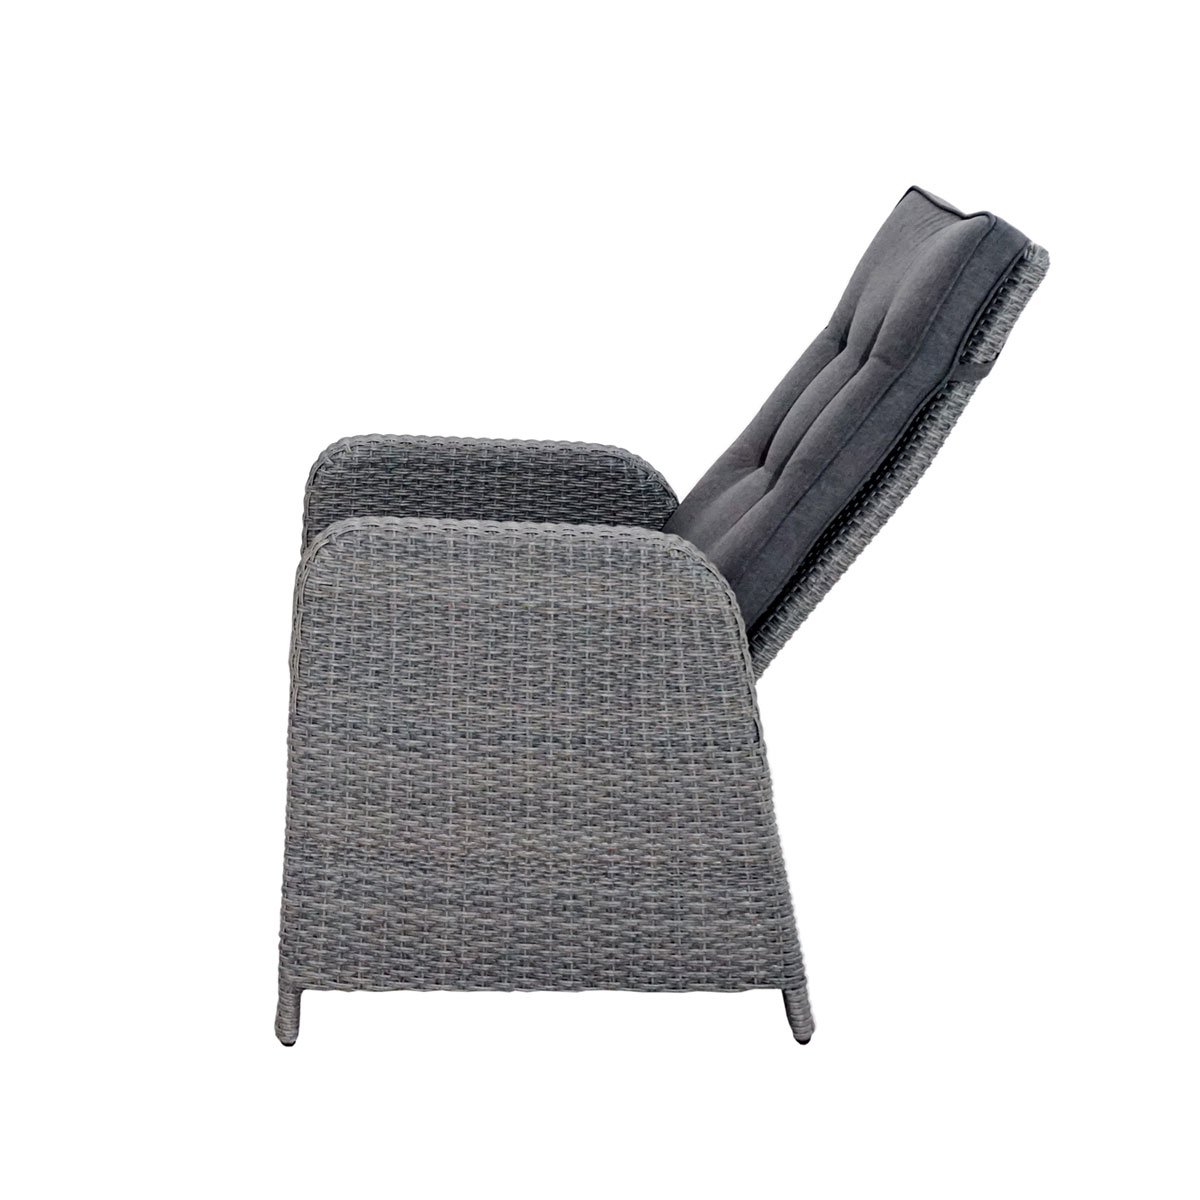 Lounge-Sessel „Kibico Comfort“, Polyrattan-Geflecht doppel-halbrund, grau-natur-meliert, inkl. Sitz-und Rückenpolster